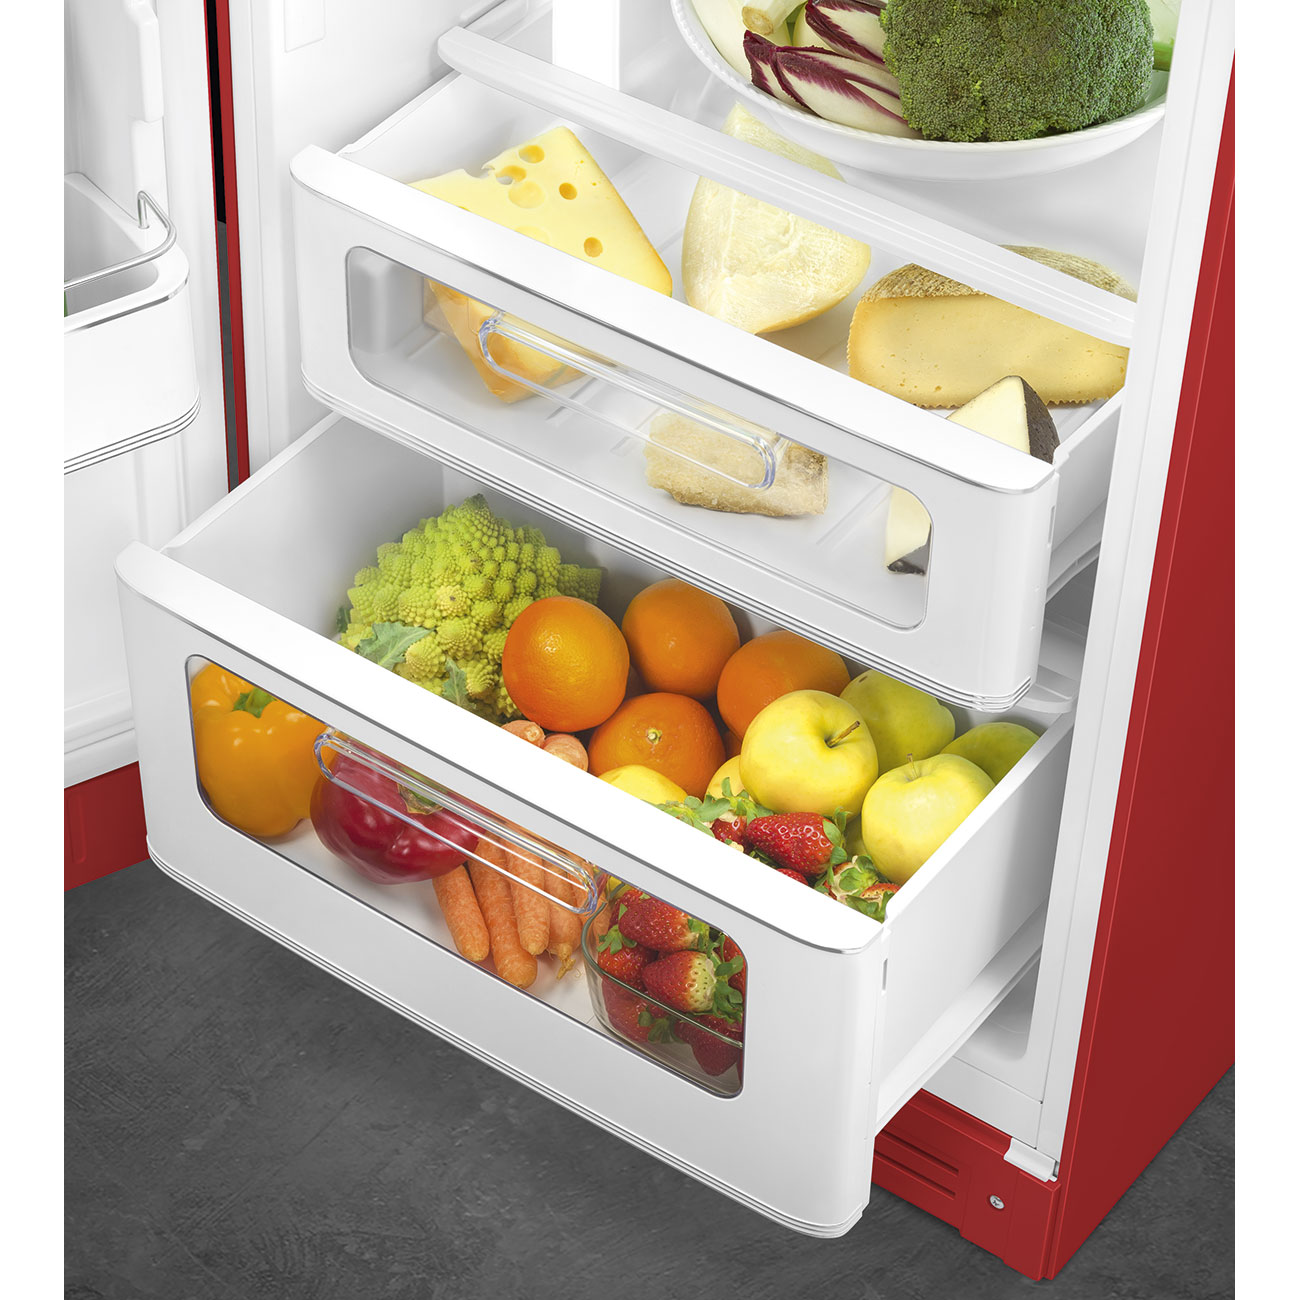 Red refrigerator - Smeg_6